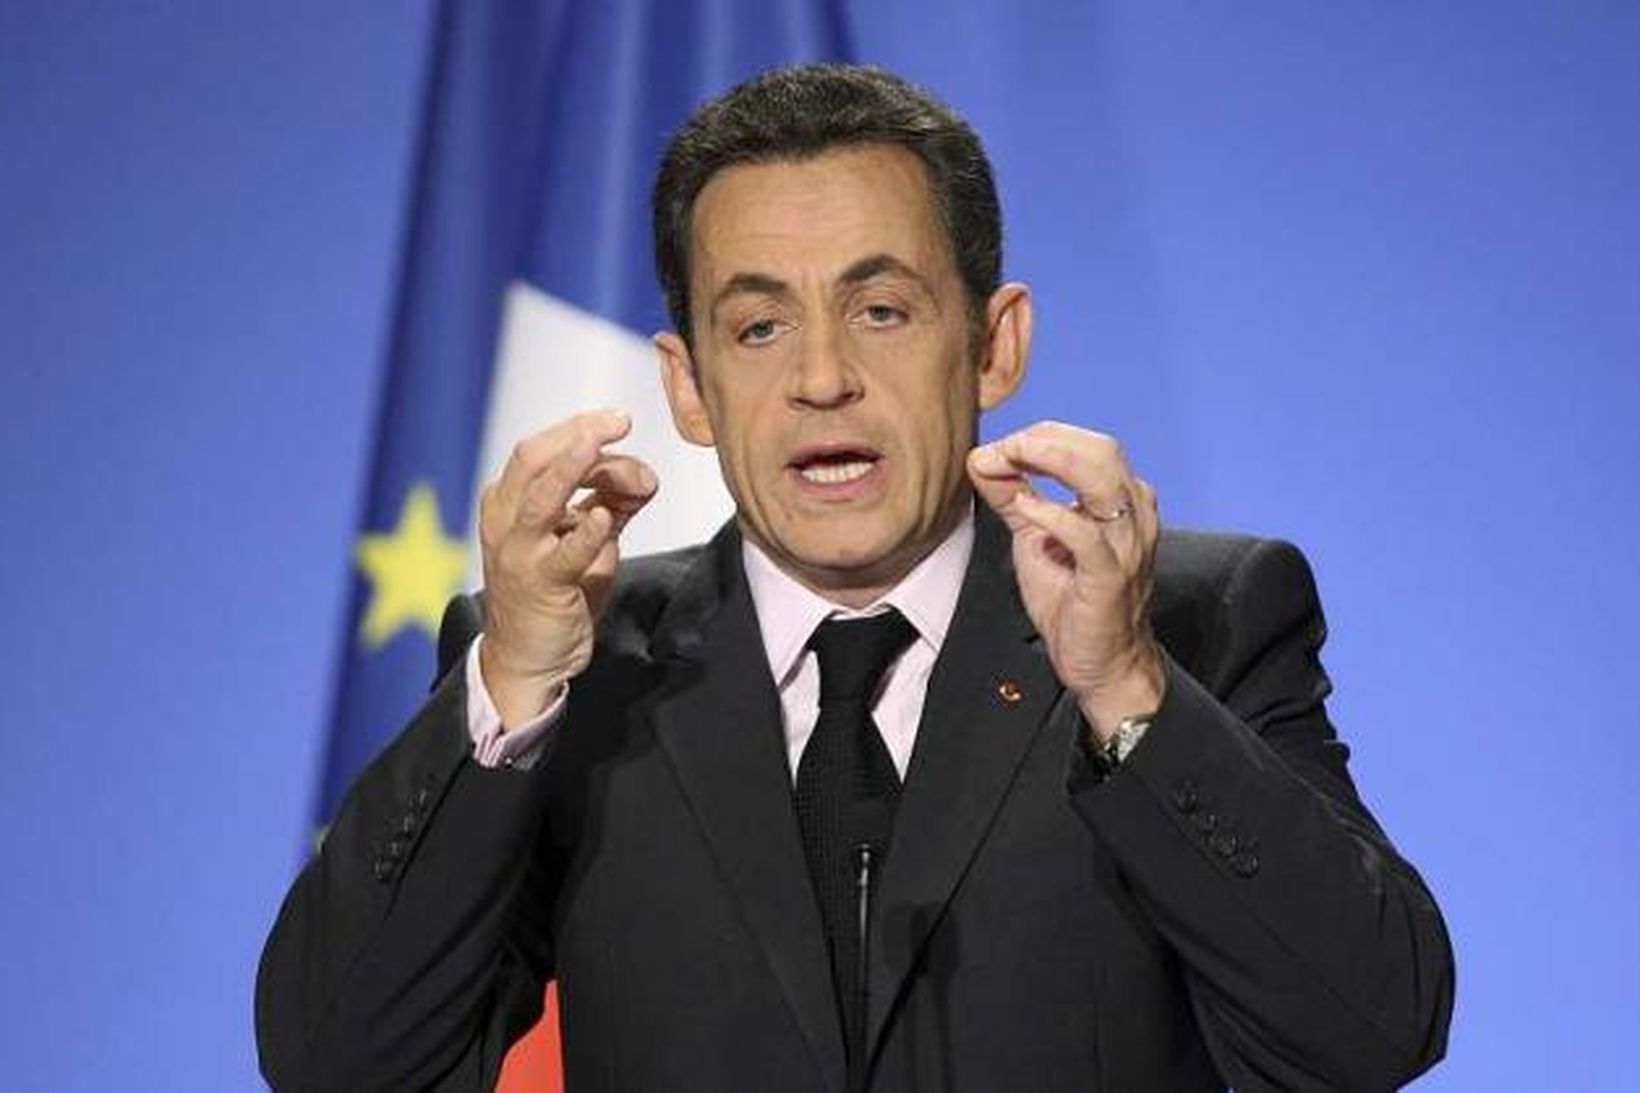 Það er óhætt að segja að Nicolas Sarkozy sé ekki …